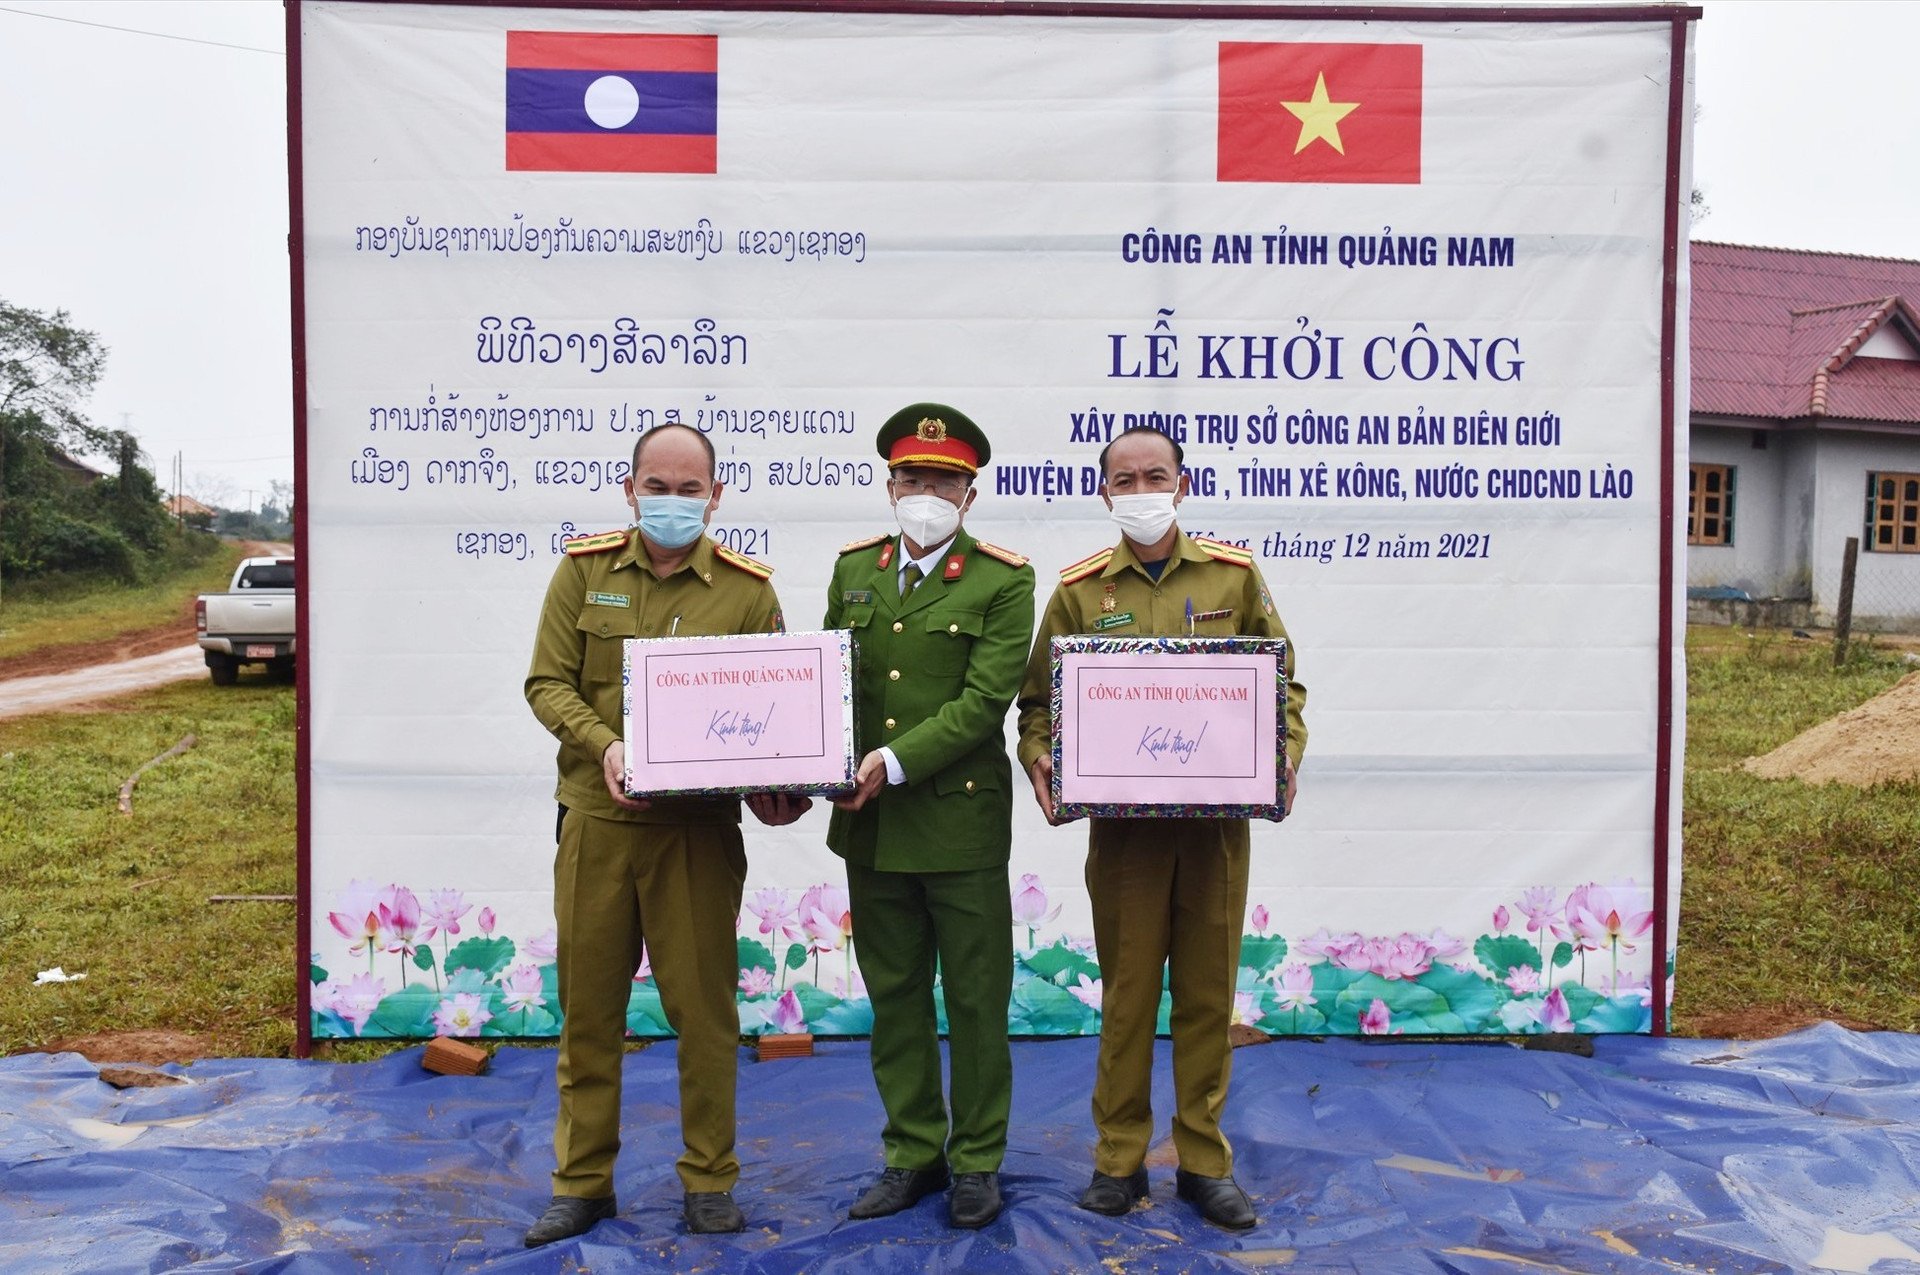 Đại tá Nguyễn Hà Lai - Phó Giám đốc Công an tỉnh tặng quà cho công an nước bạn Lào. Ảnh: M.T